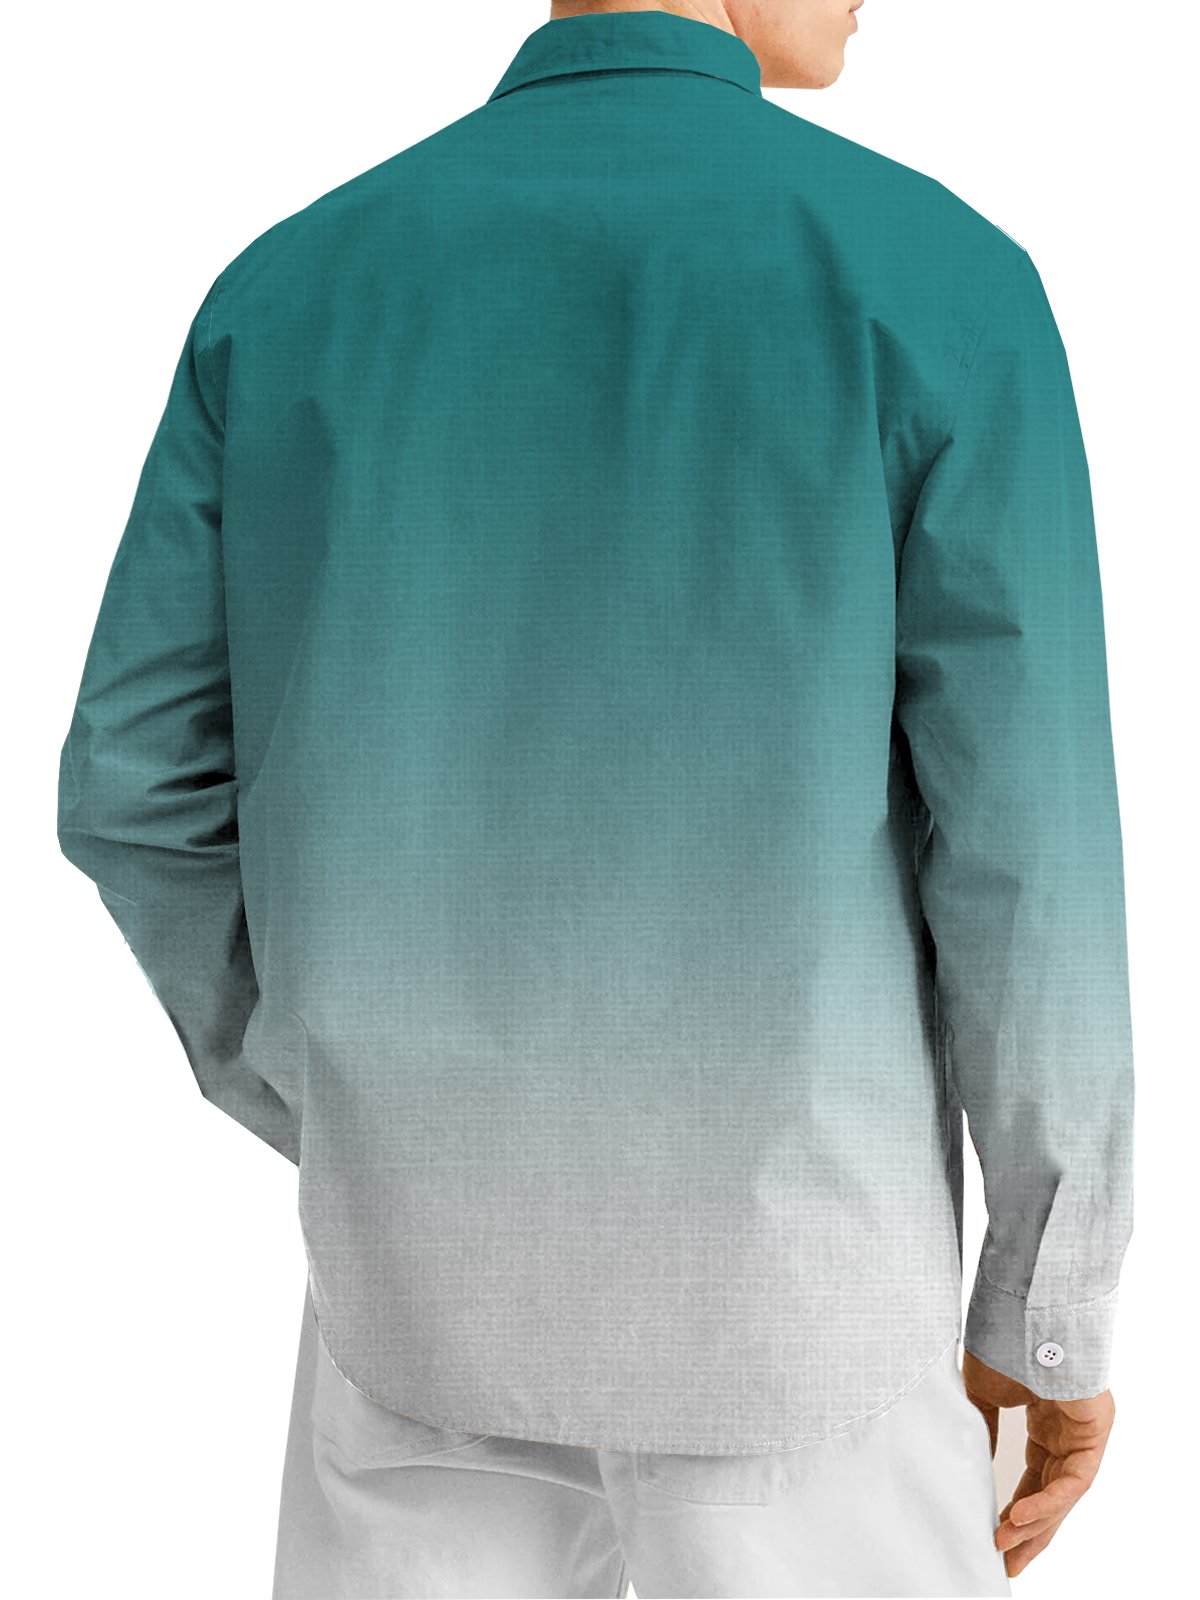 Cotton Linen Music Print Casual Long Sleeve Shirt